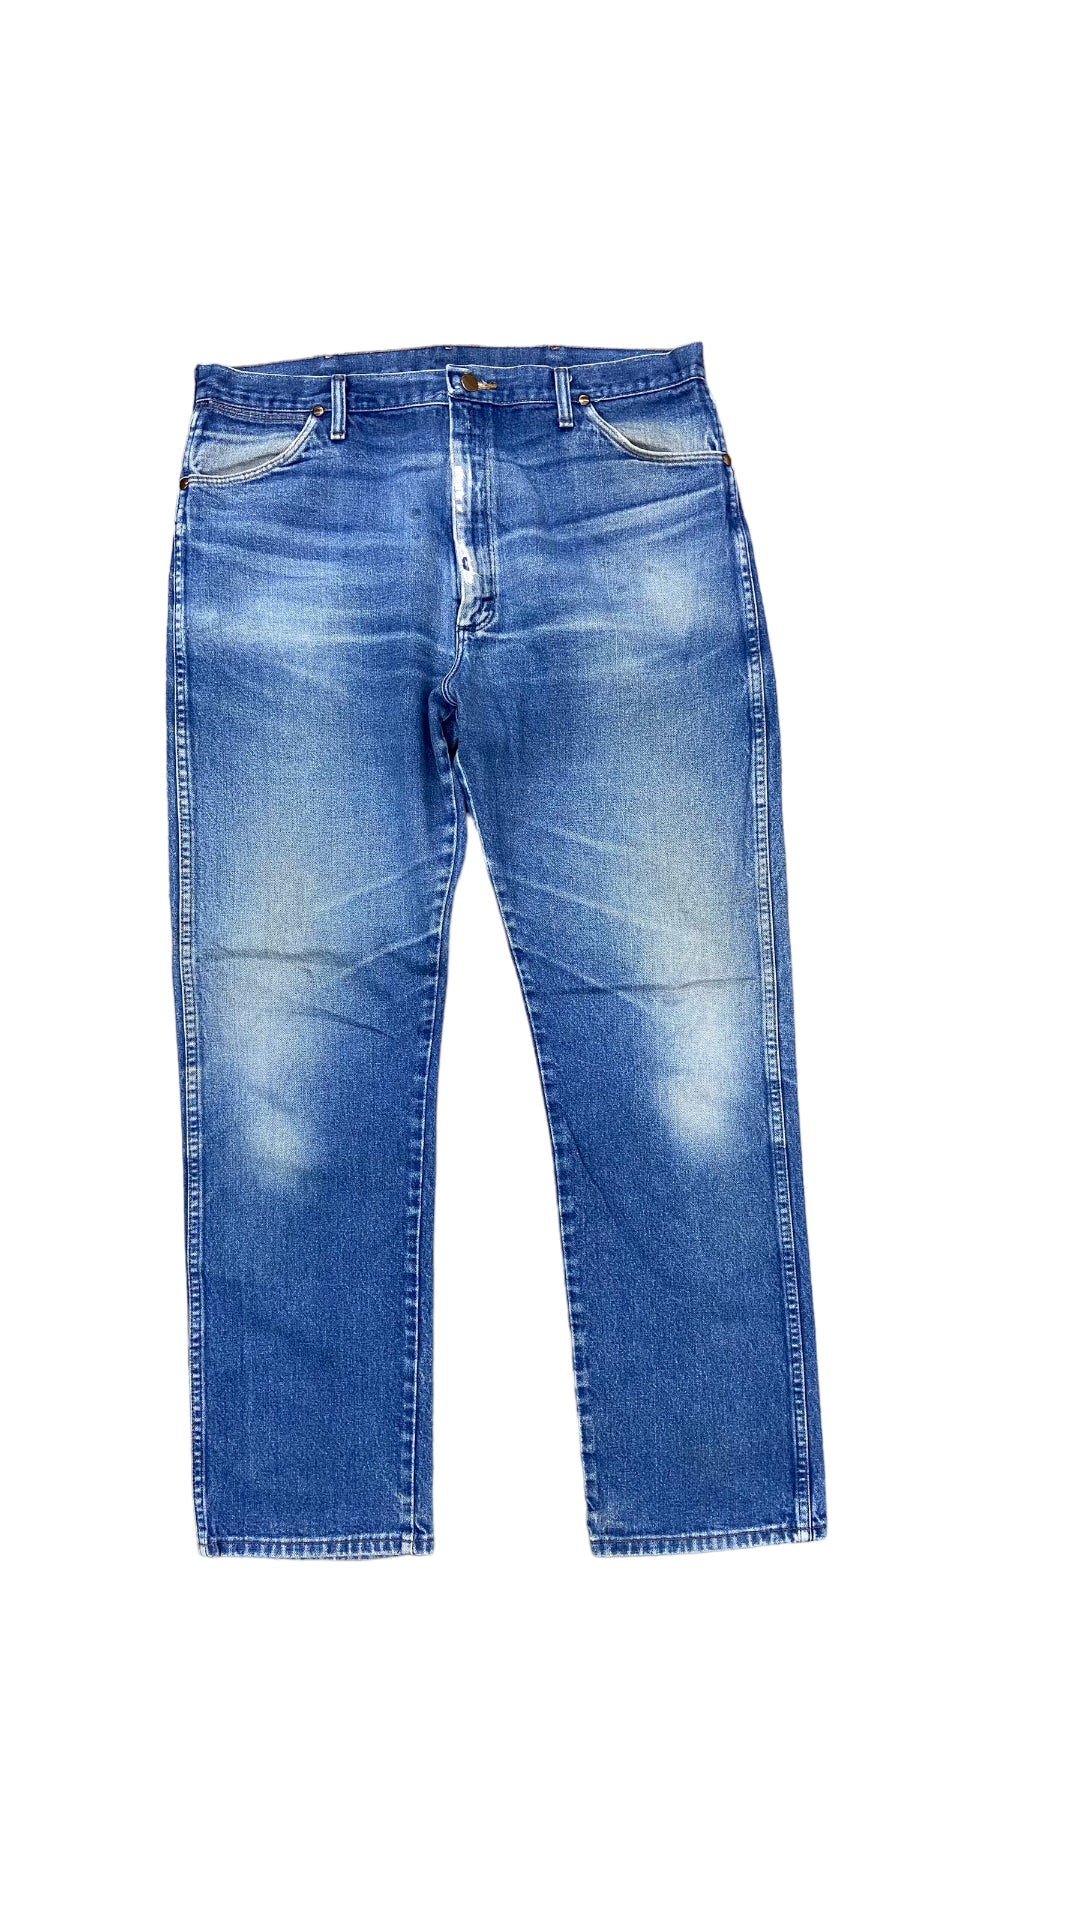 VTG Wrangler Blue Jeans Sz 38x32